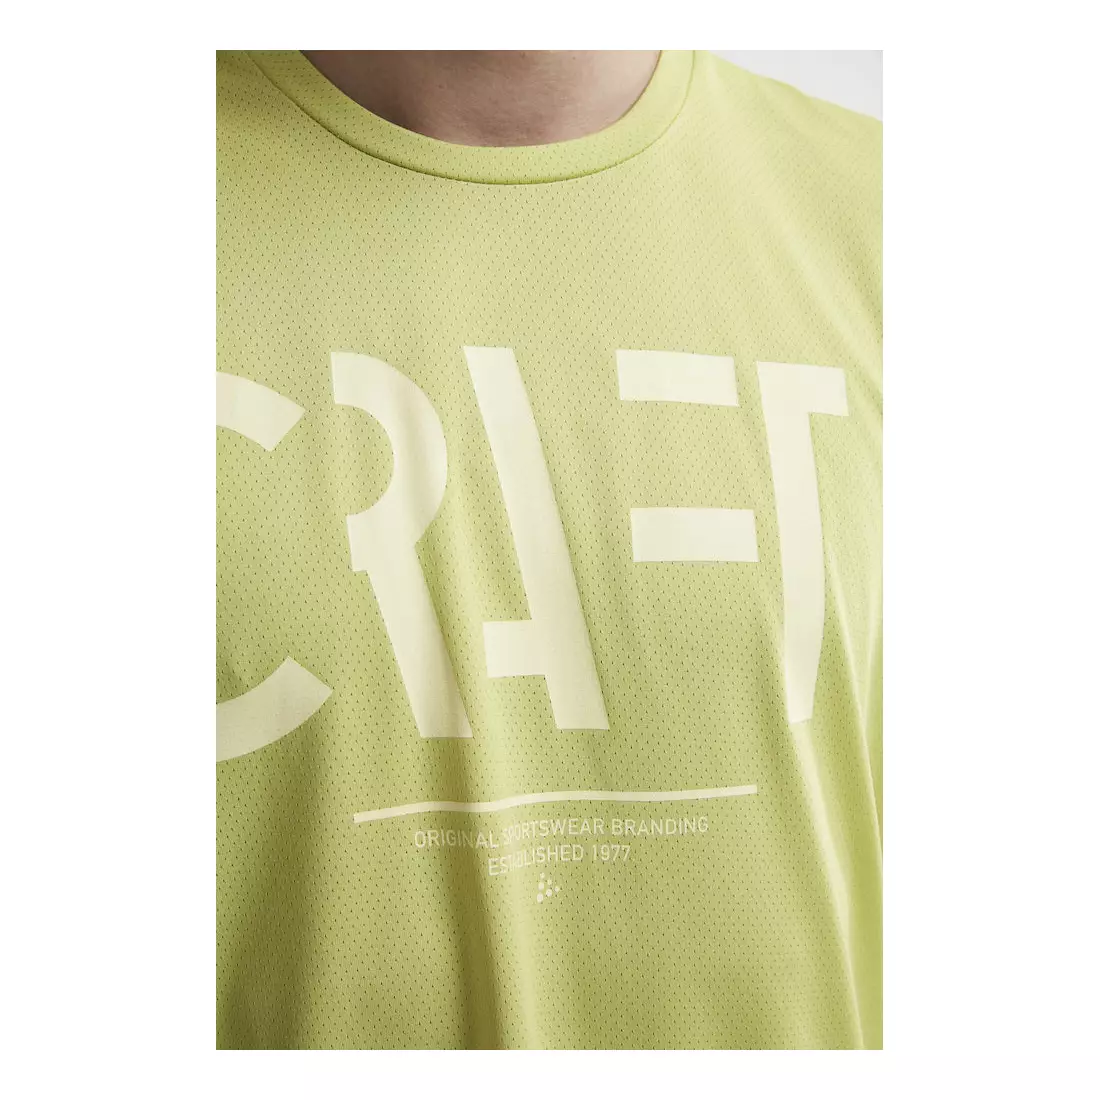 CRAFT EAZE MESH Men's T-shirt for sports / running green 1907018-611000